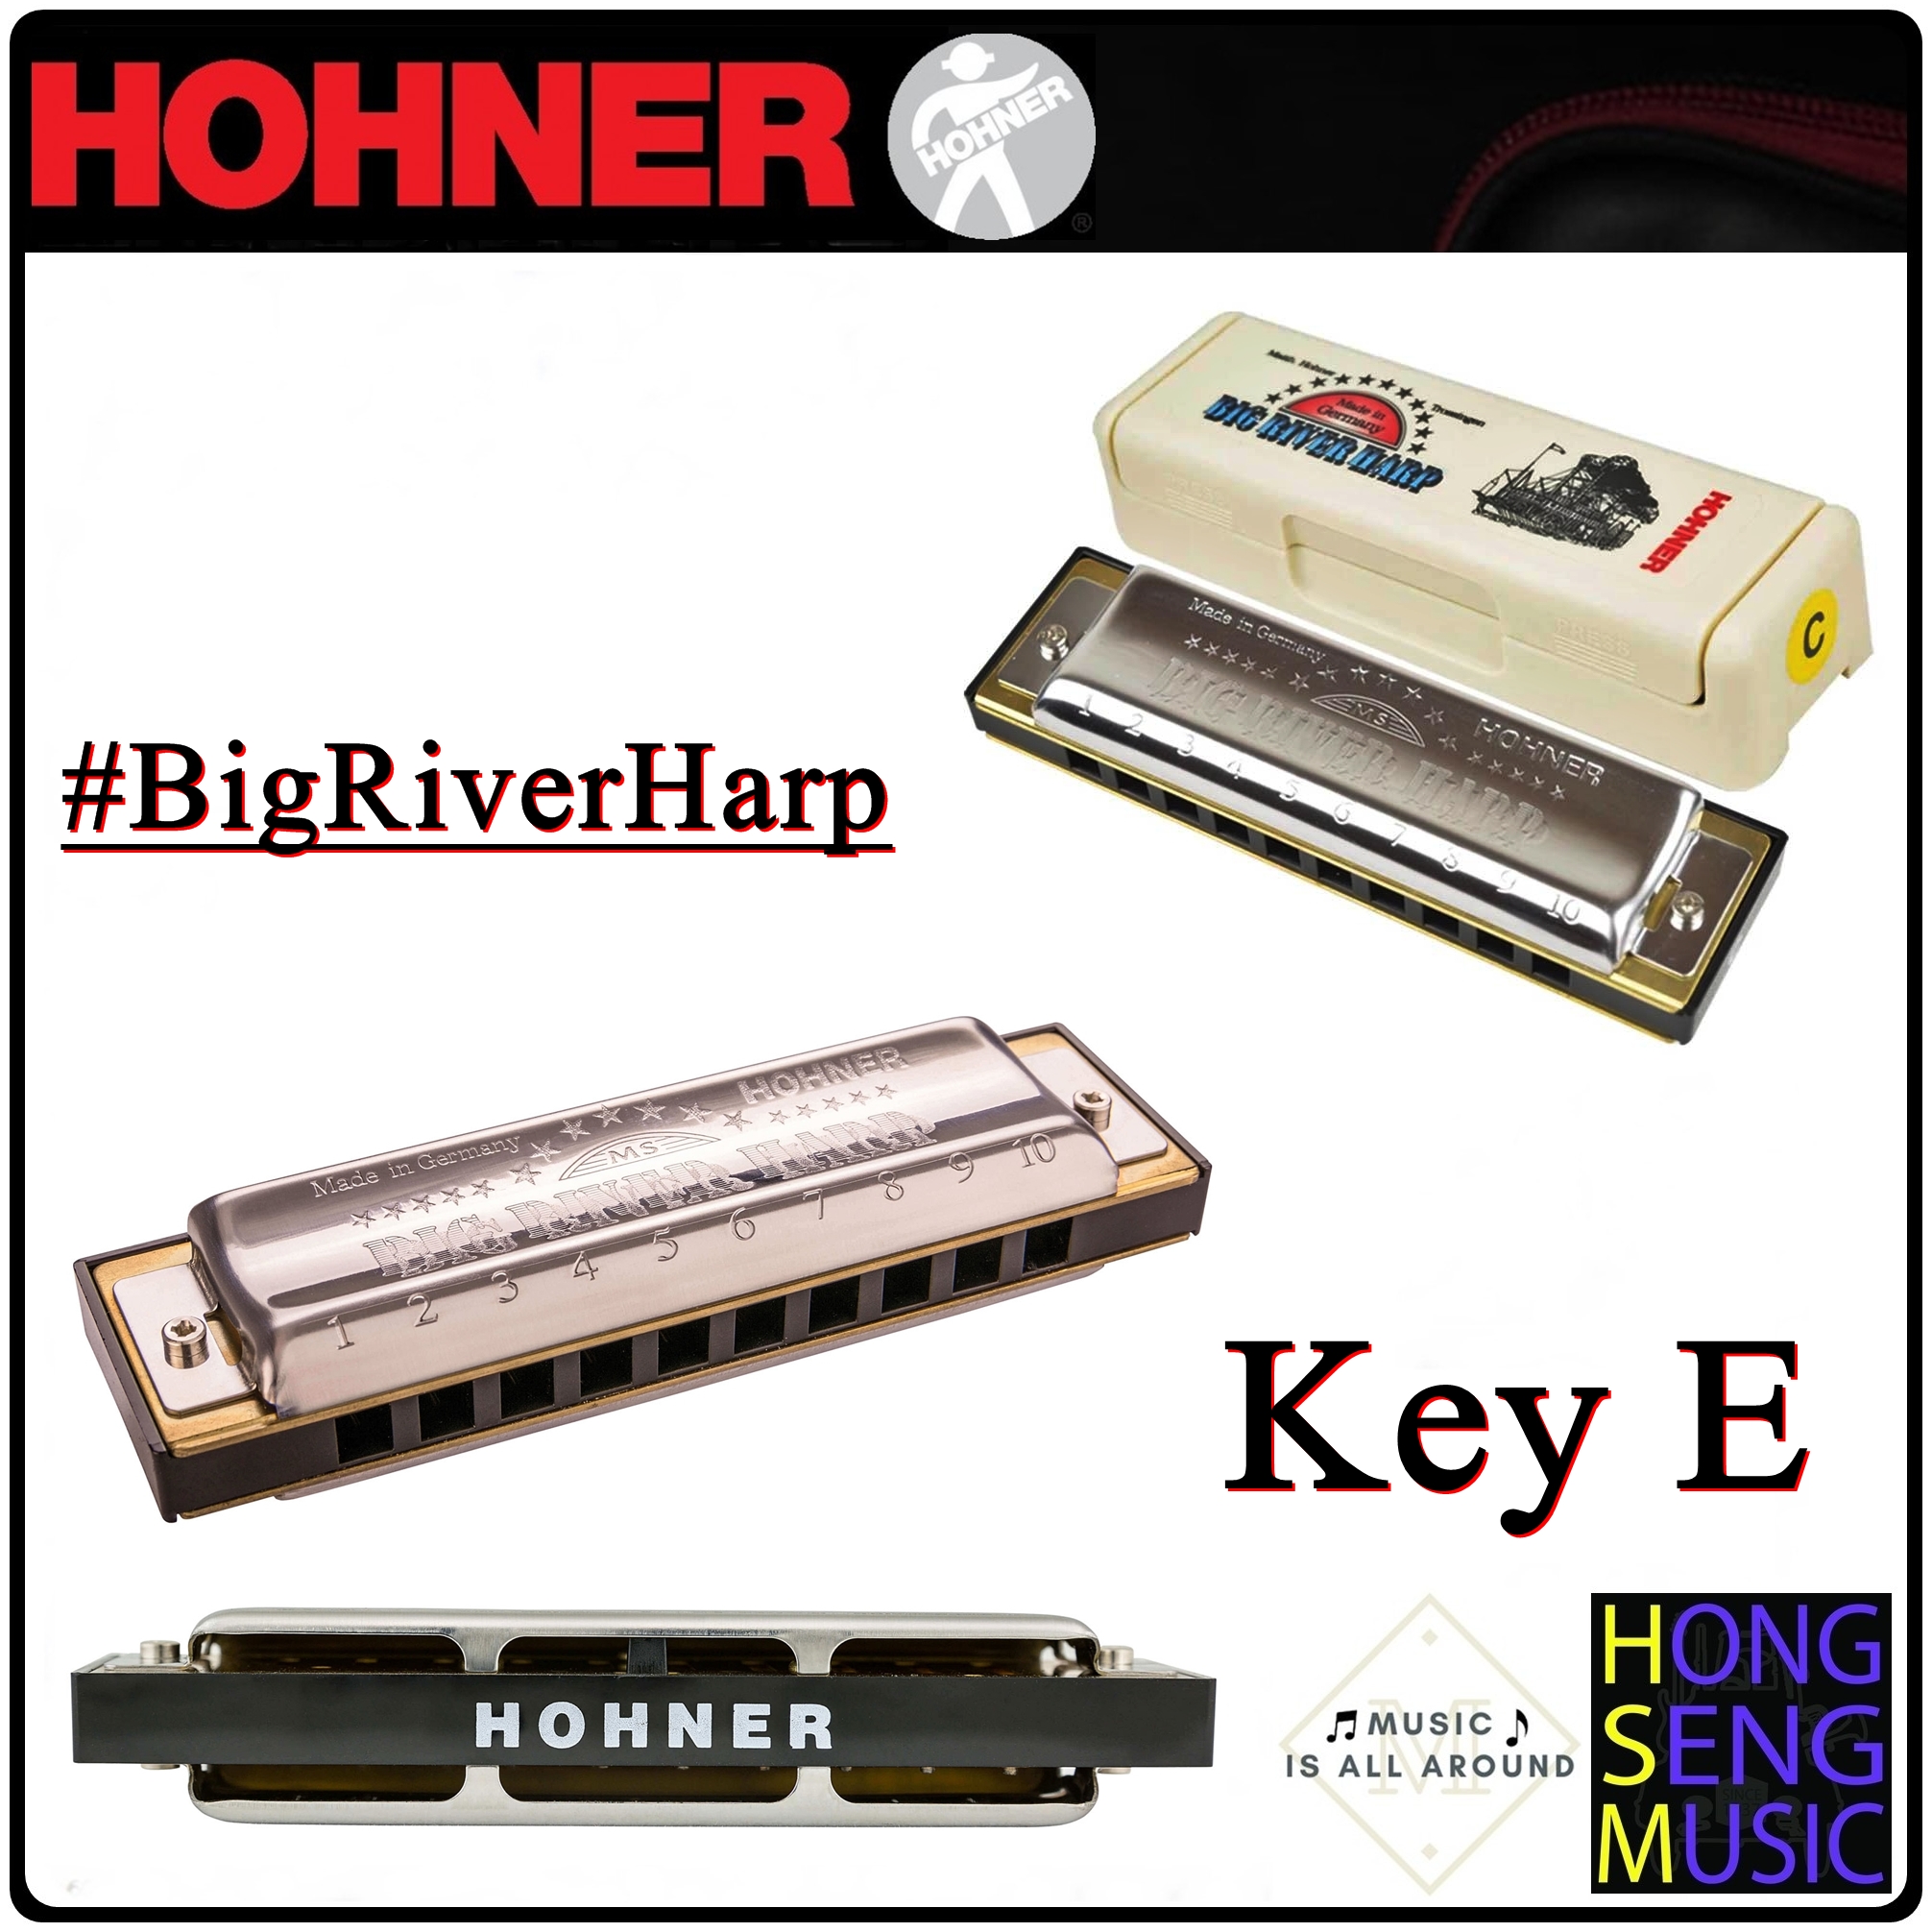 ฮาร์โมนิก้า (เม้าท์ออร์แกน) Hohner รุ่น Big River Harp Harmonica 590 Key E